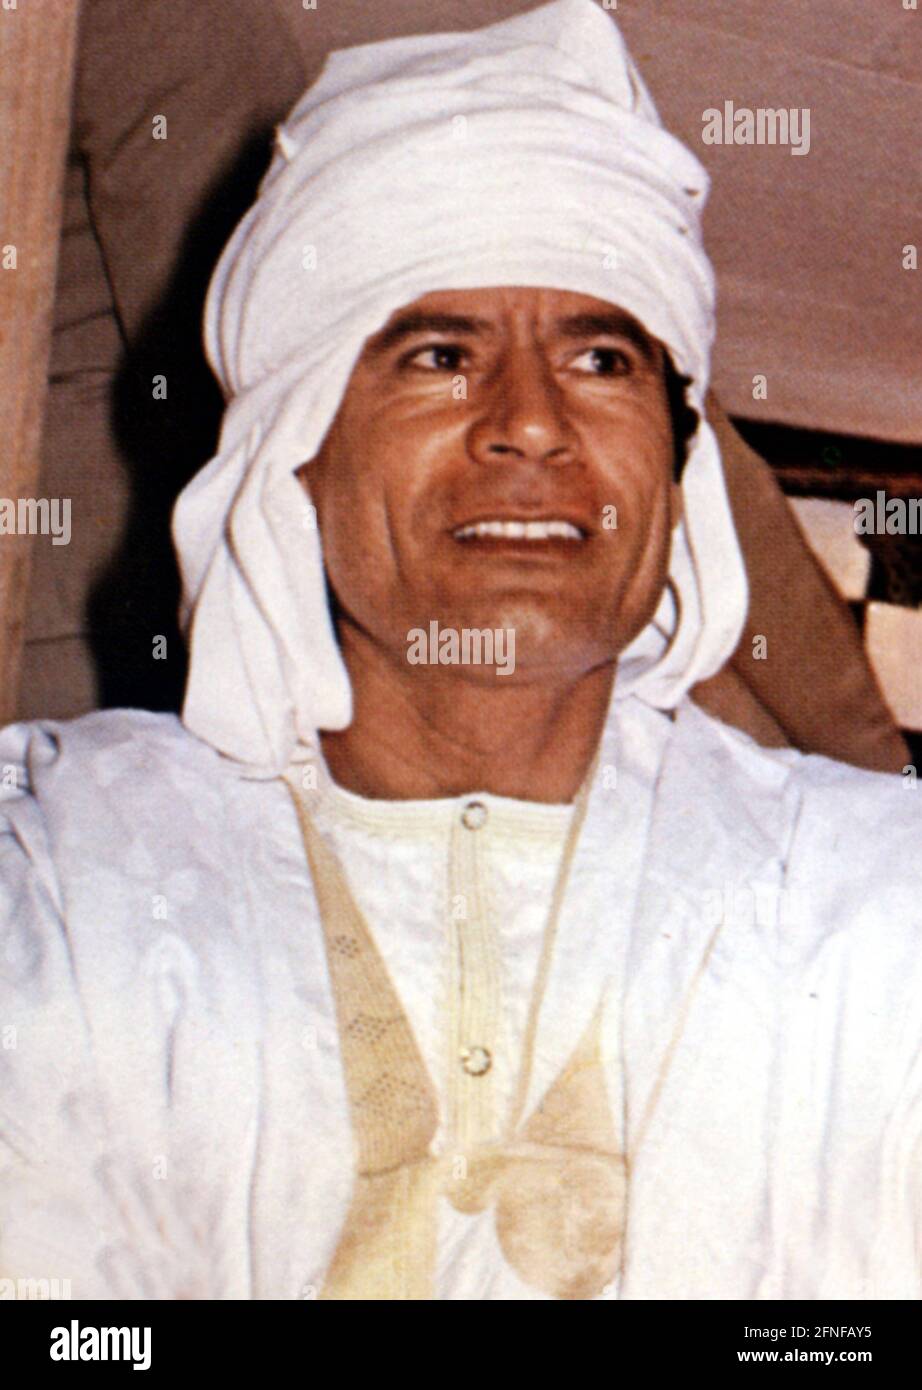 Datum der Aufnahme: 01.01.1993 - 31.12.1993 Muammar al Gaddafi - *19.06.1942 revolutionärer Führer und seit 1969 Staatsoberhaupt von Libyen. Undated Portrait von 1993 in einem Zelt in der libyschen Wüste. [Automatisierte Übersetzung] Stockfoto